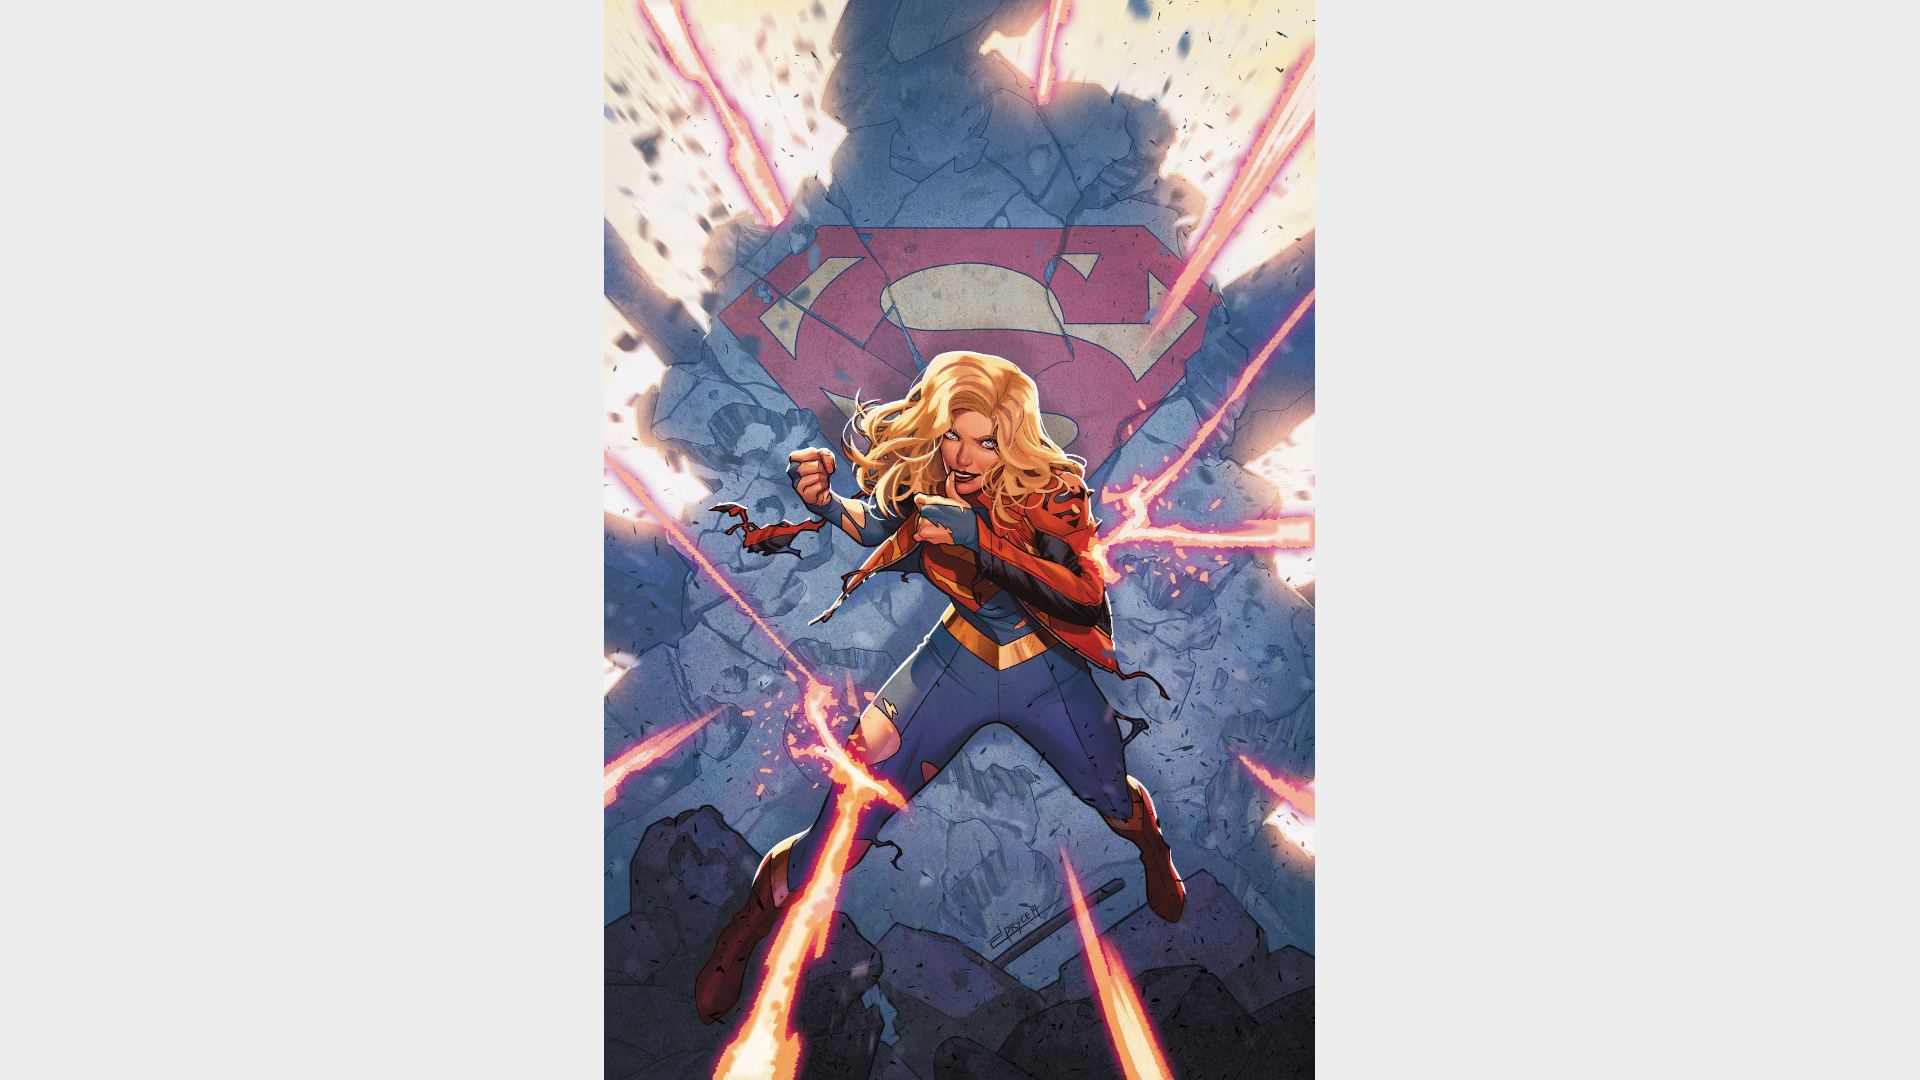 Speciale Supergirl #1